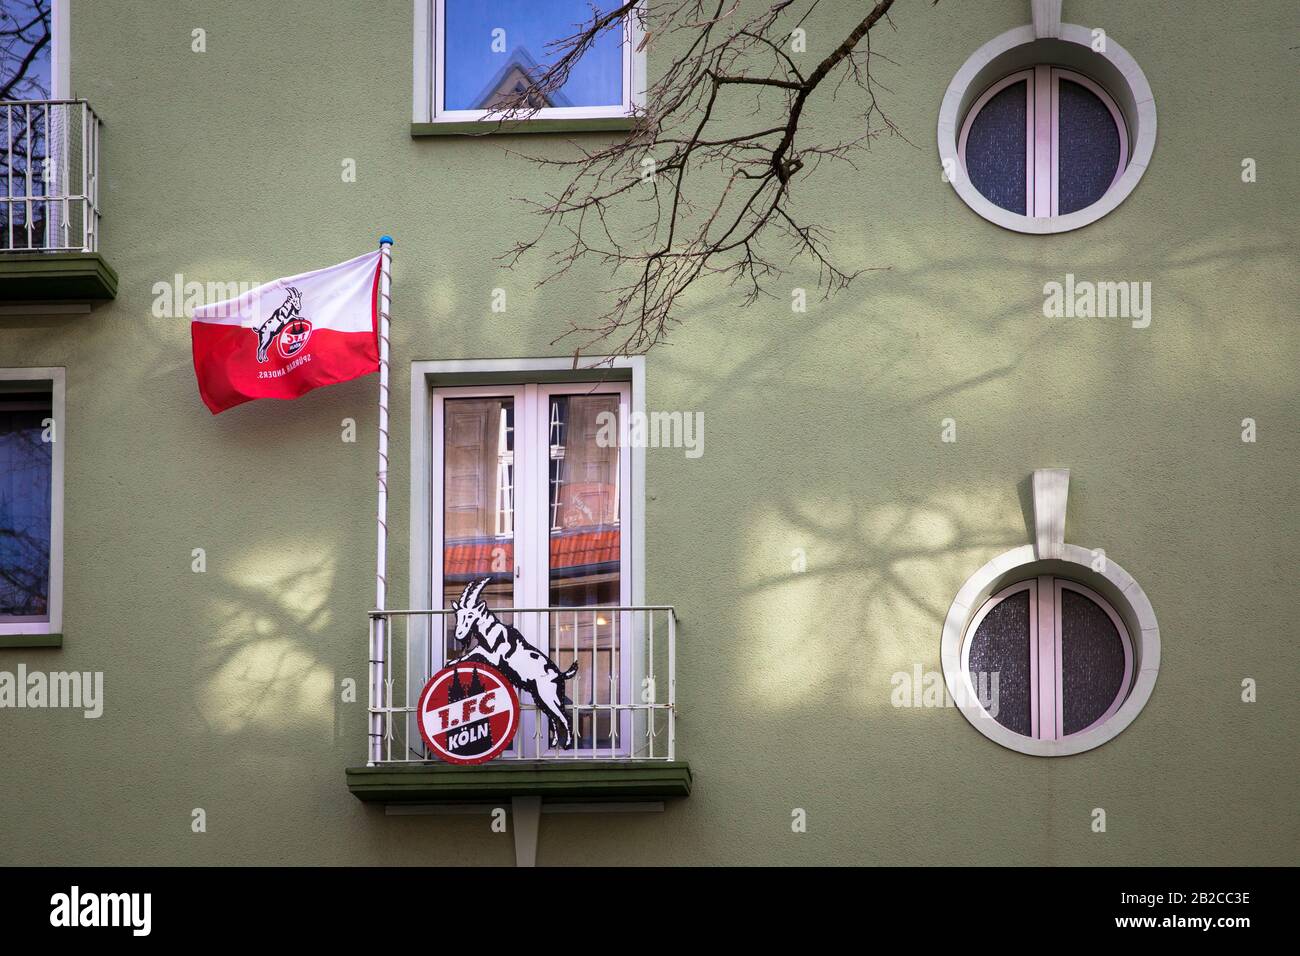 balcón decorado con bandera y mascota (billy goat) del club de fútbol 1. FC Koeln en una casa en el distrito Nippes, Koeln, Alemania. Mit 1. FC Koe Foto de stock